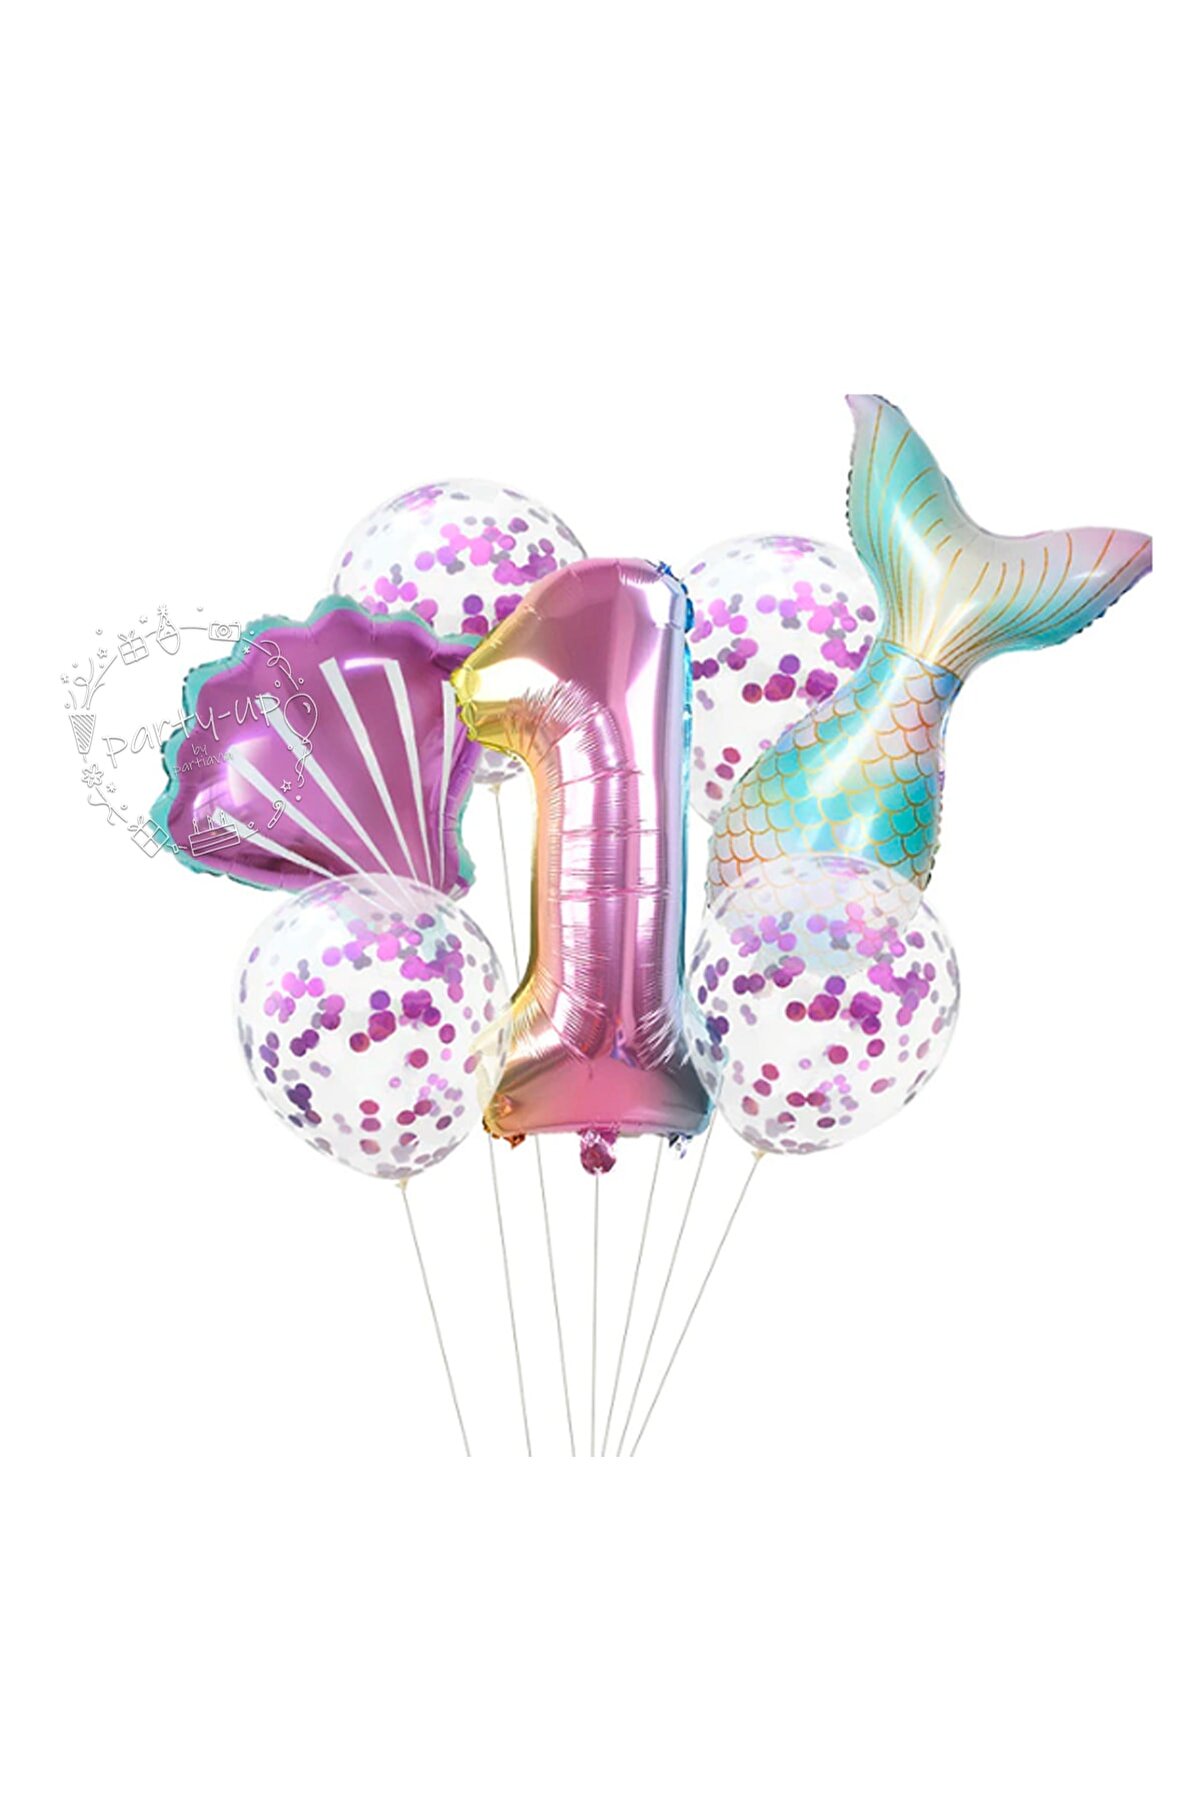 PARTİAVM Deniz Kızı Balon 7li Set ( Denizkızı Deniz Kabuğu Rakam Balon Ve Pullu Şeffaf Balon Buketi )